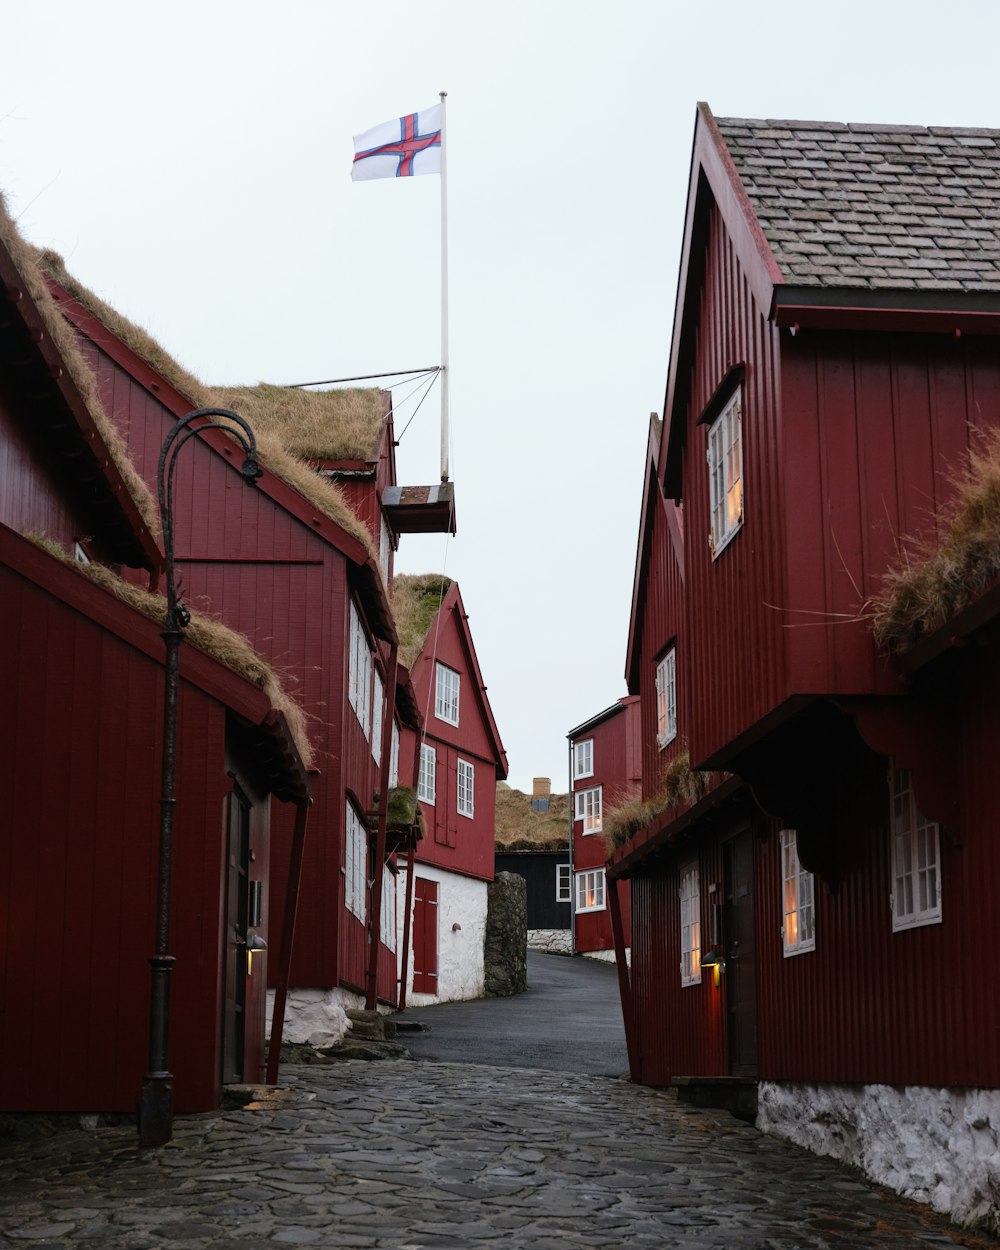 une rue pavée avec des bâtiments rouges et un drapeau sur un mât